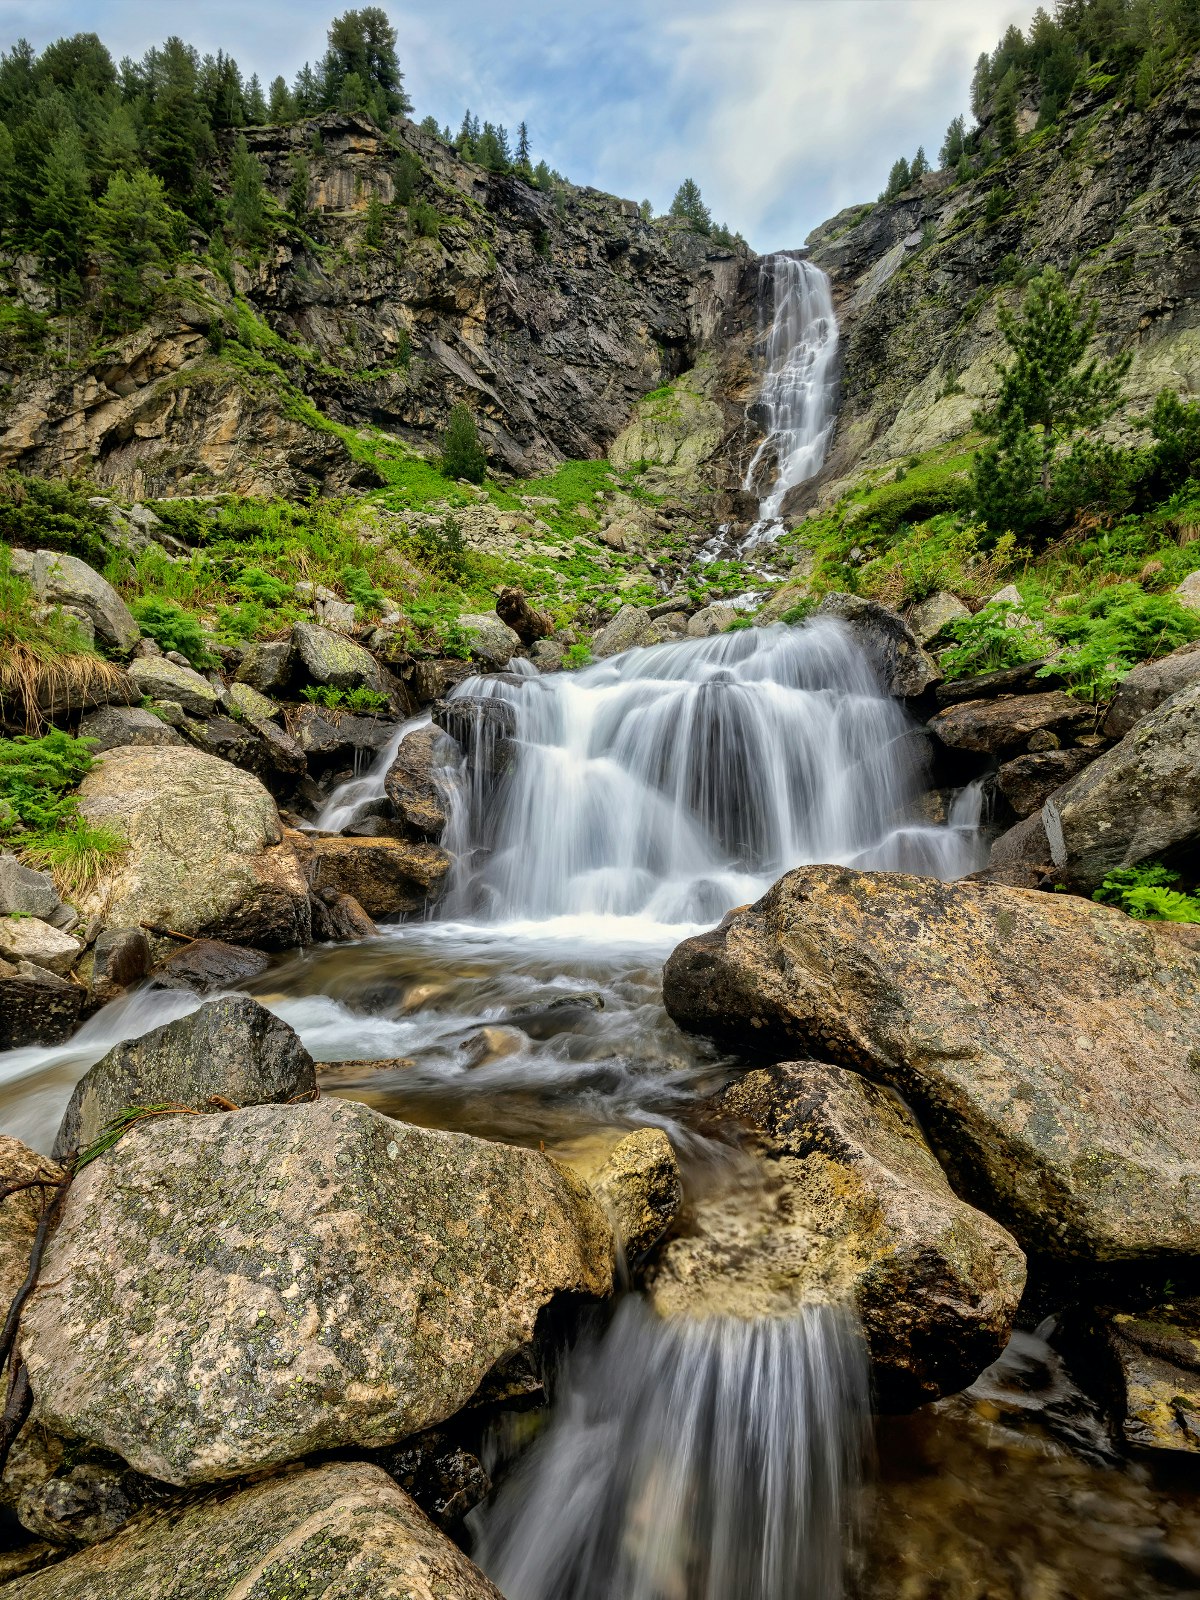 The 70m-high Skakavitsa waterfall in the Rila Mountains © Jasmine_K / Shutterstock